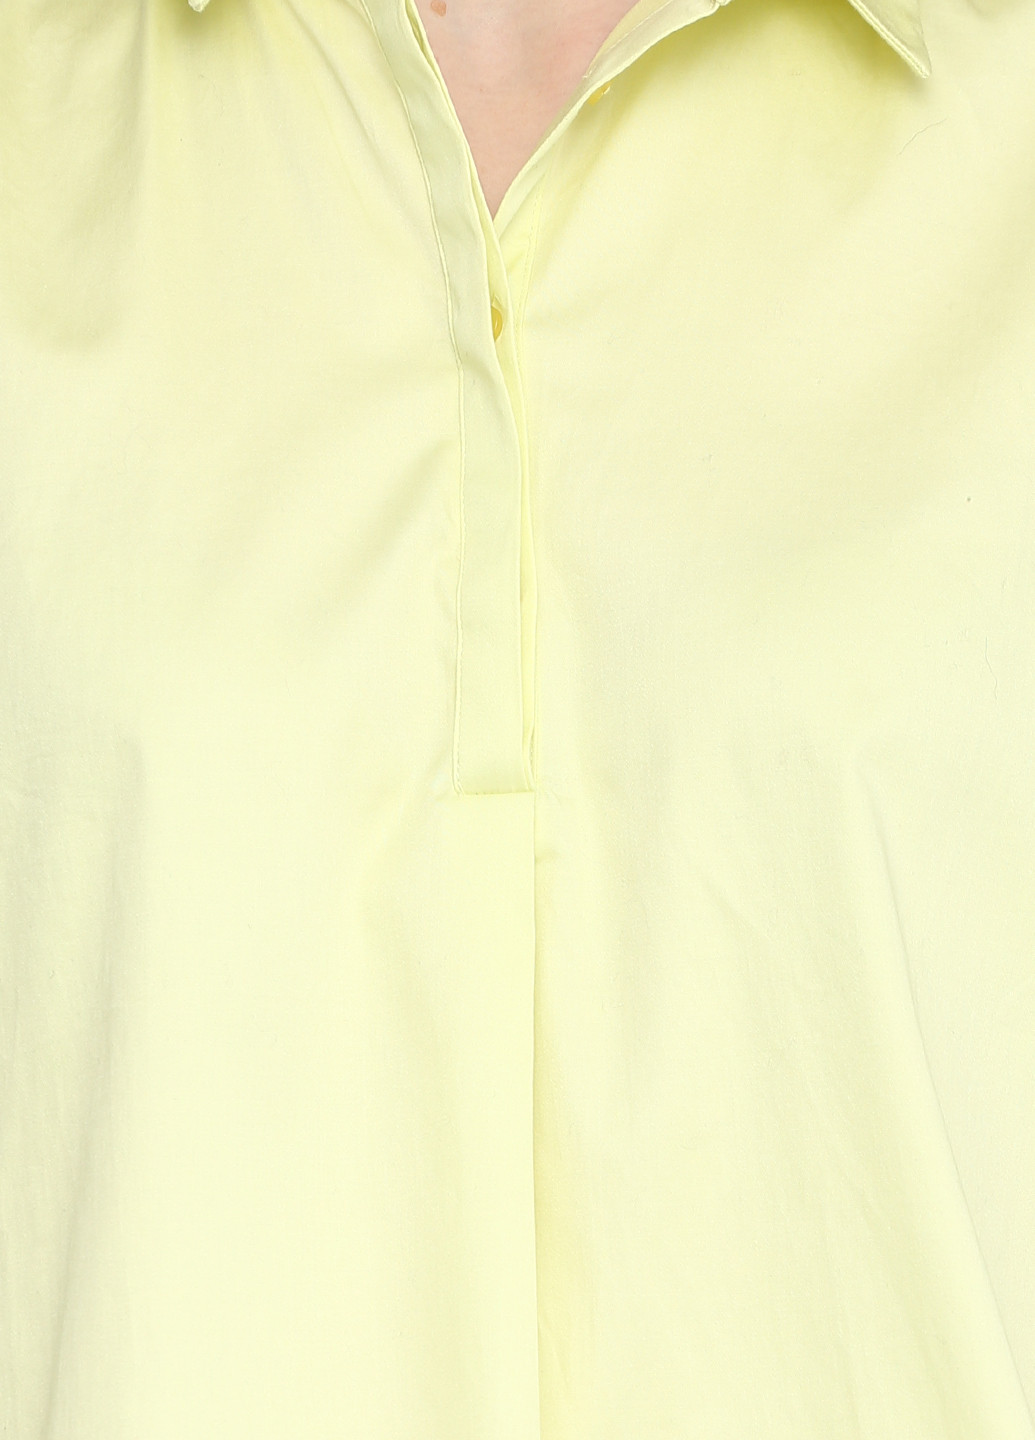 Желтая демисезонная блуза с длинным рукавом Cos